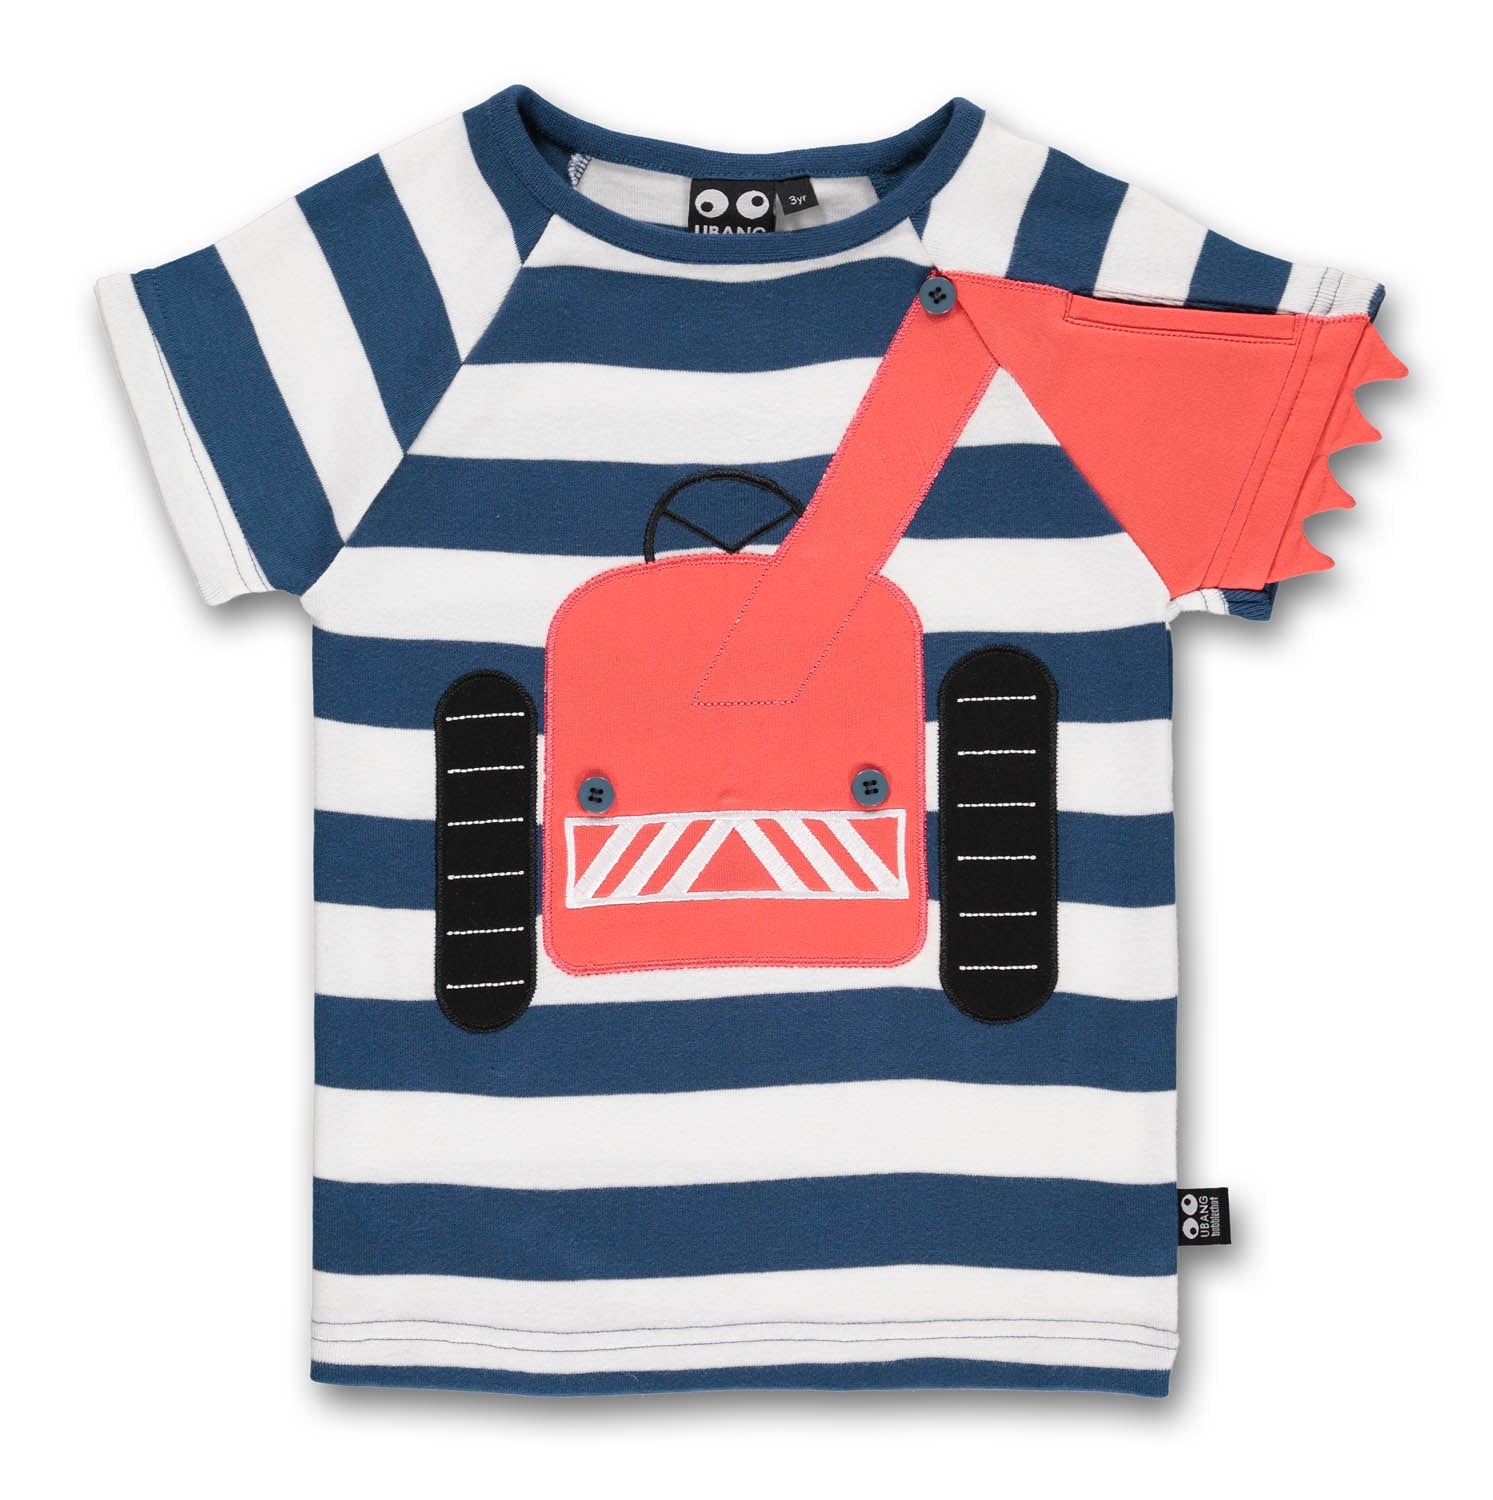 Bespreken schotel Moderniseren Ubang Big Machine Tee Blue Striped - Blauw Gestreept Shirt met Rode Tr -  GOEDvanToen - Eerlijke & biologische kinderkleding en babykleding